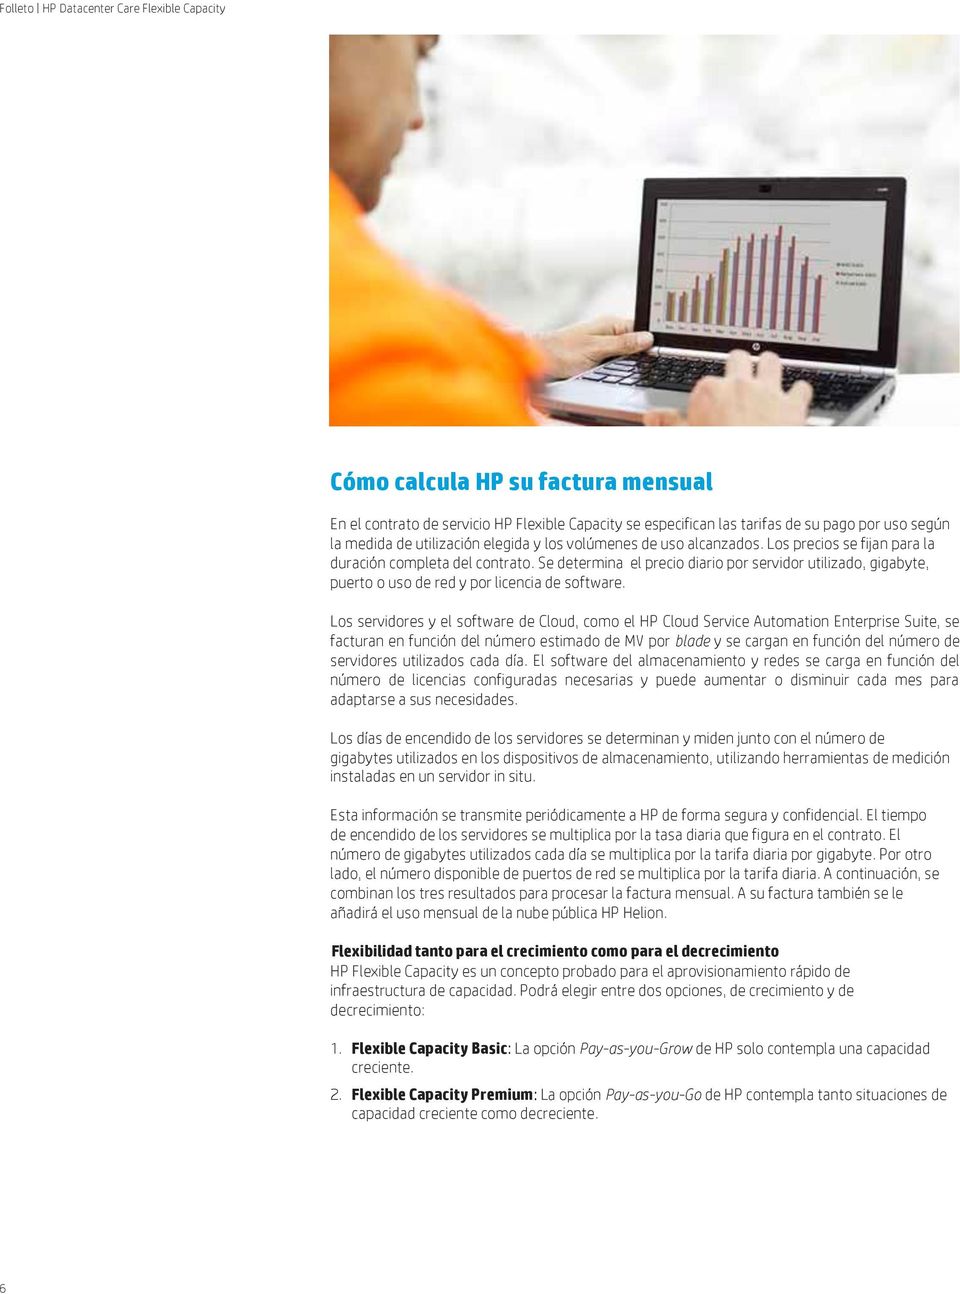 Los servidores y el software de Cloud, como el HP Cloud Service Automation Enterprise Suite, se facturan en función del número estimado de MV por blade y se cargan en función del número de servidores